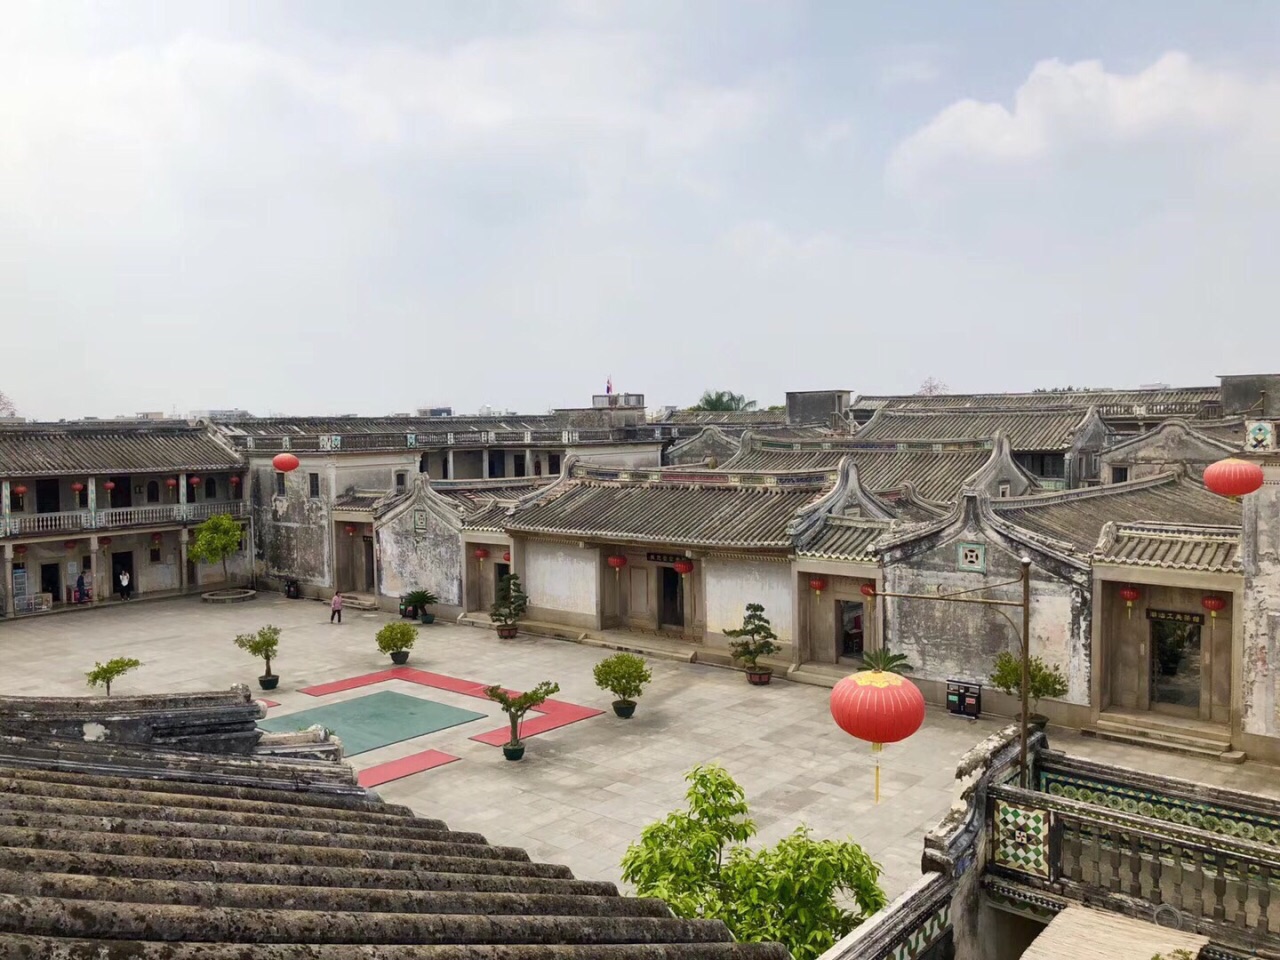 田园风情 探访中国最美的六大古镇古村_图片故事_风景网